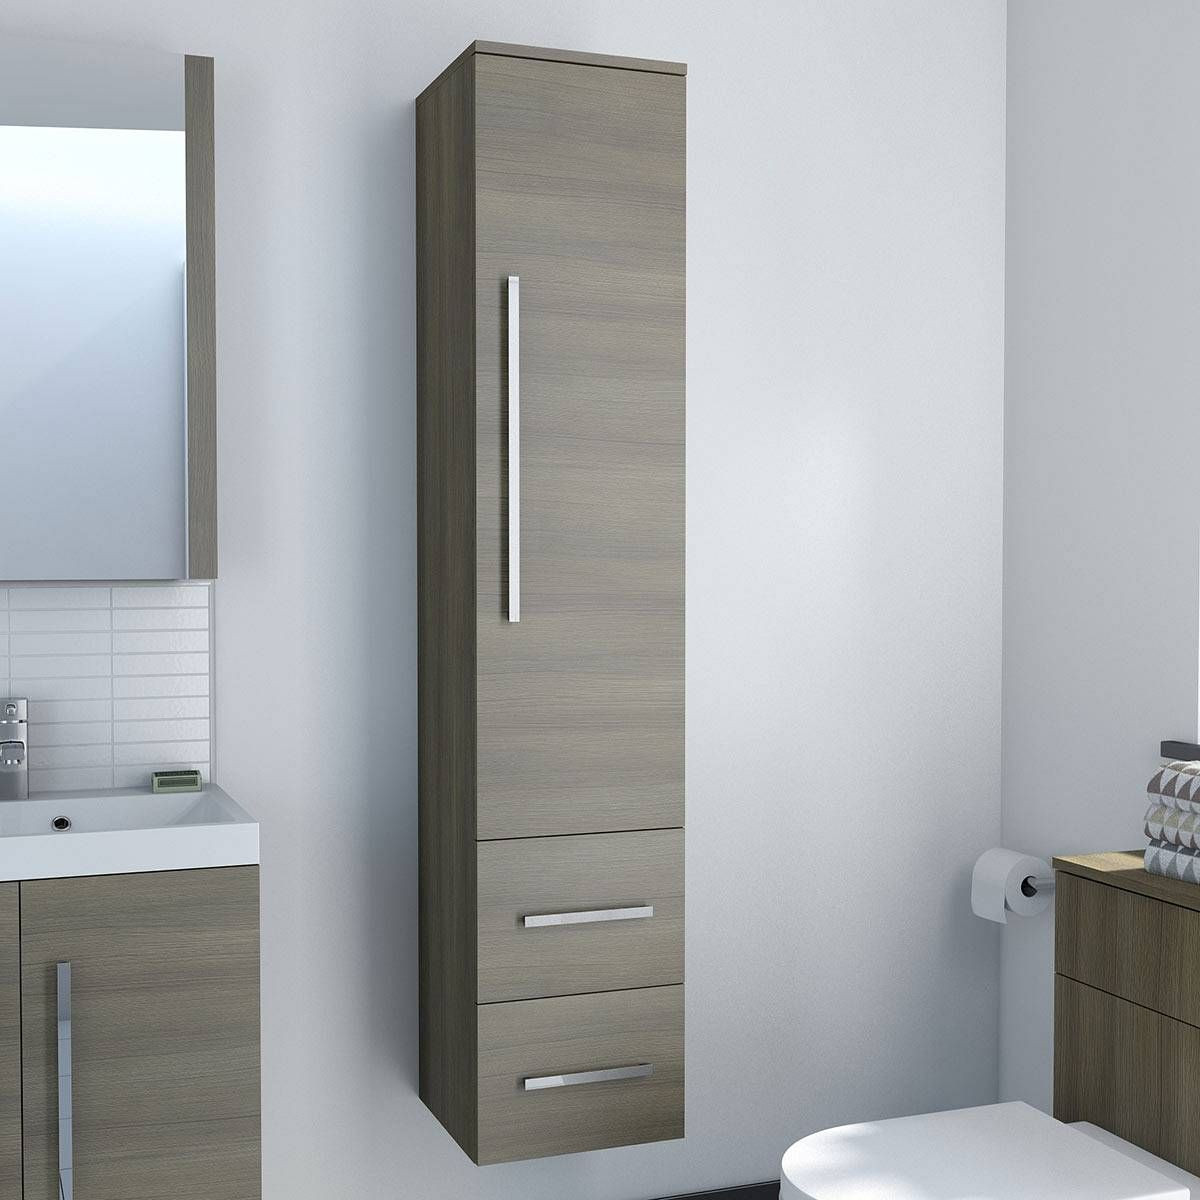 Tall Bathroom Storage Cabinets
 Narrow Tall Bathroom Cabinets in 2019